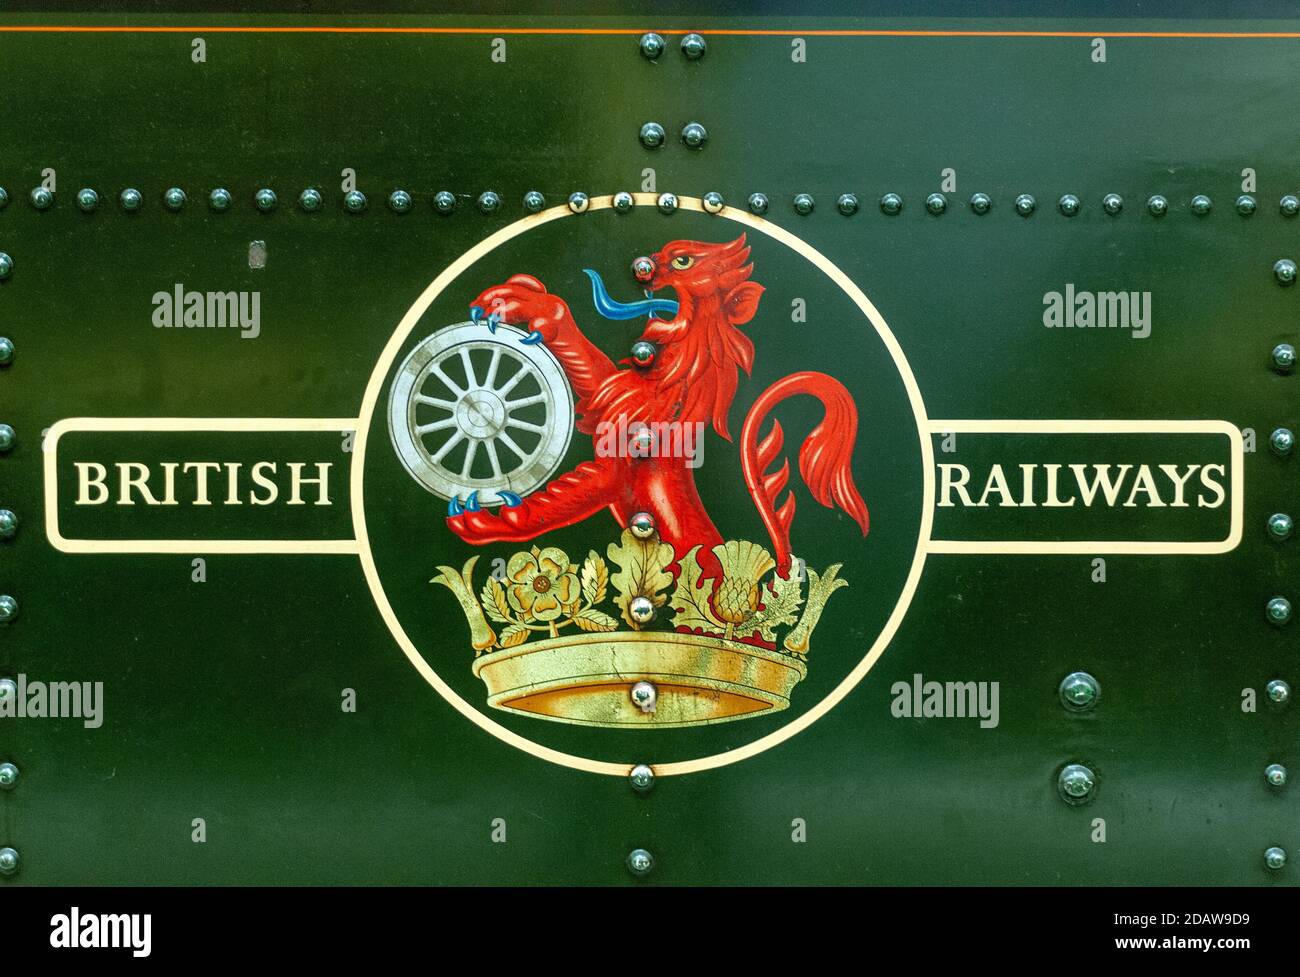 British Railways logo. Stock Photo